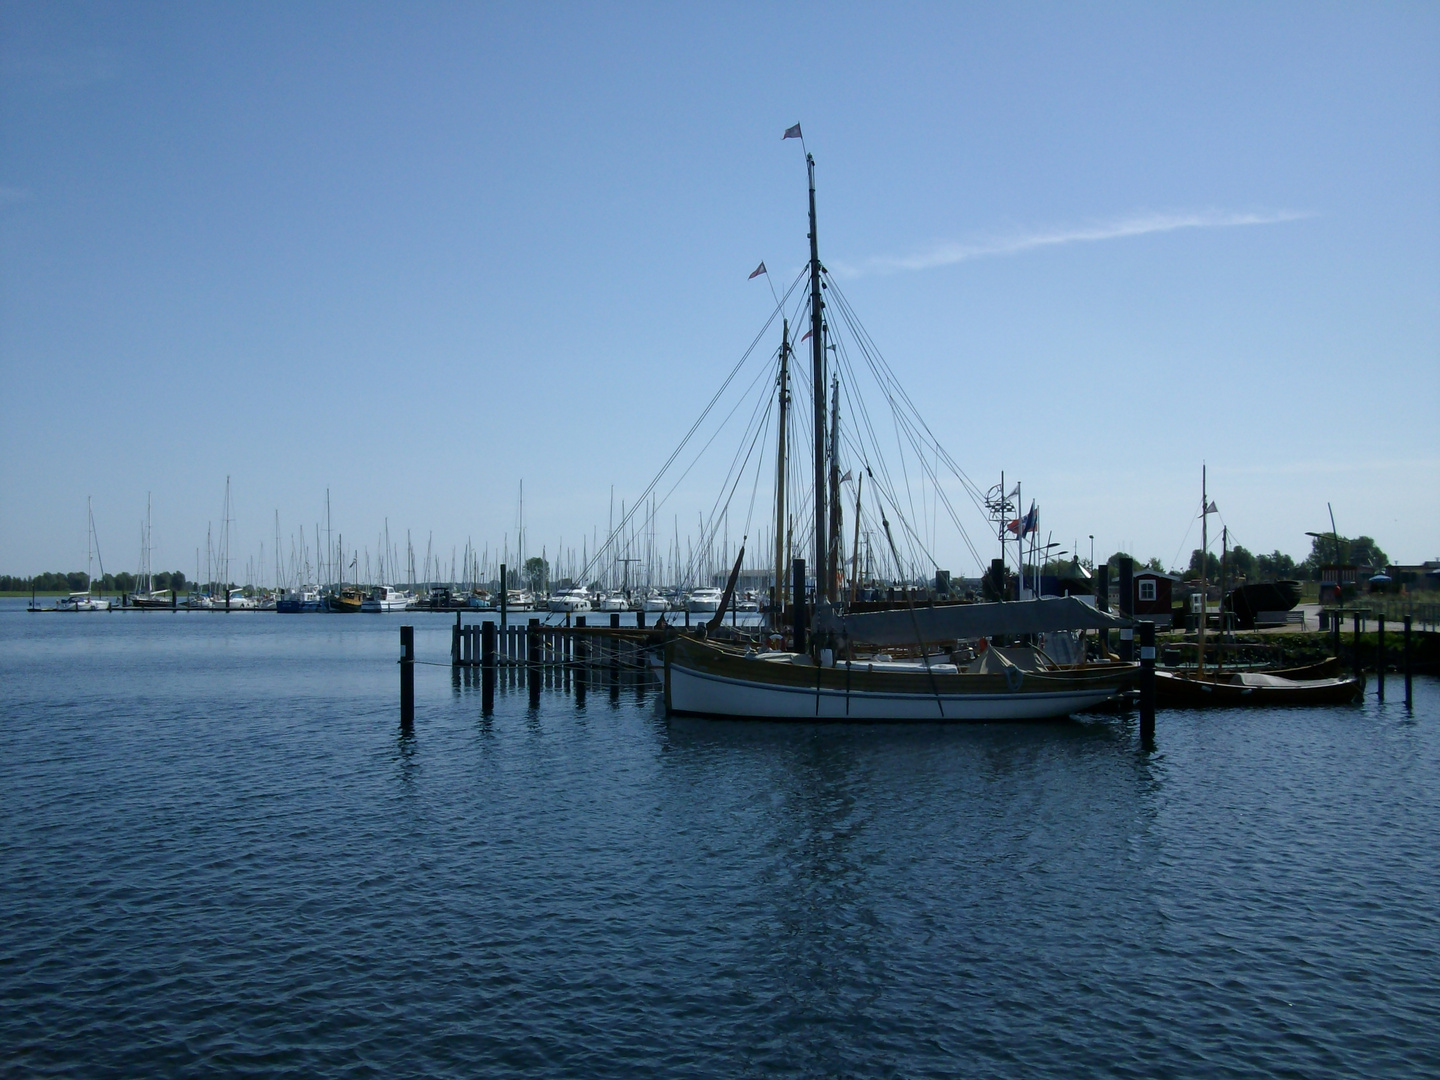 Urlaubsblau am Wasser mit Segelschiff